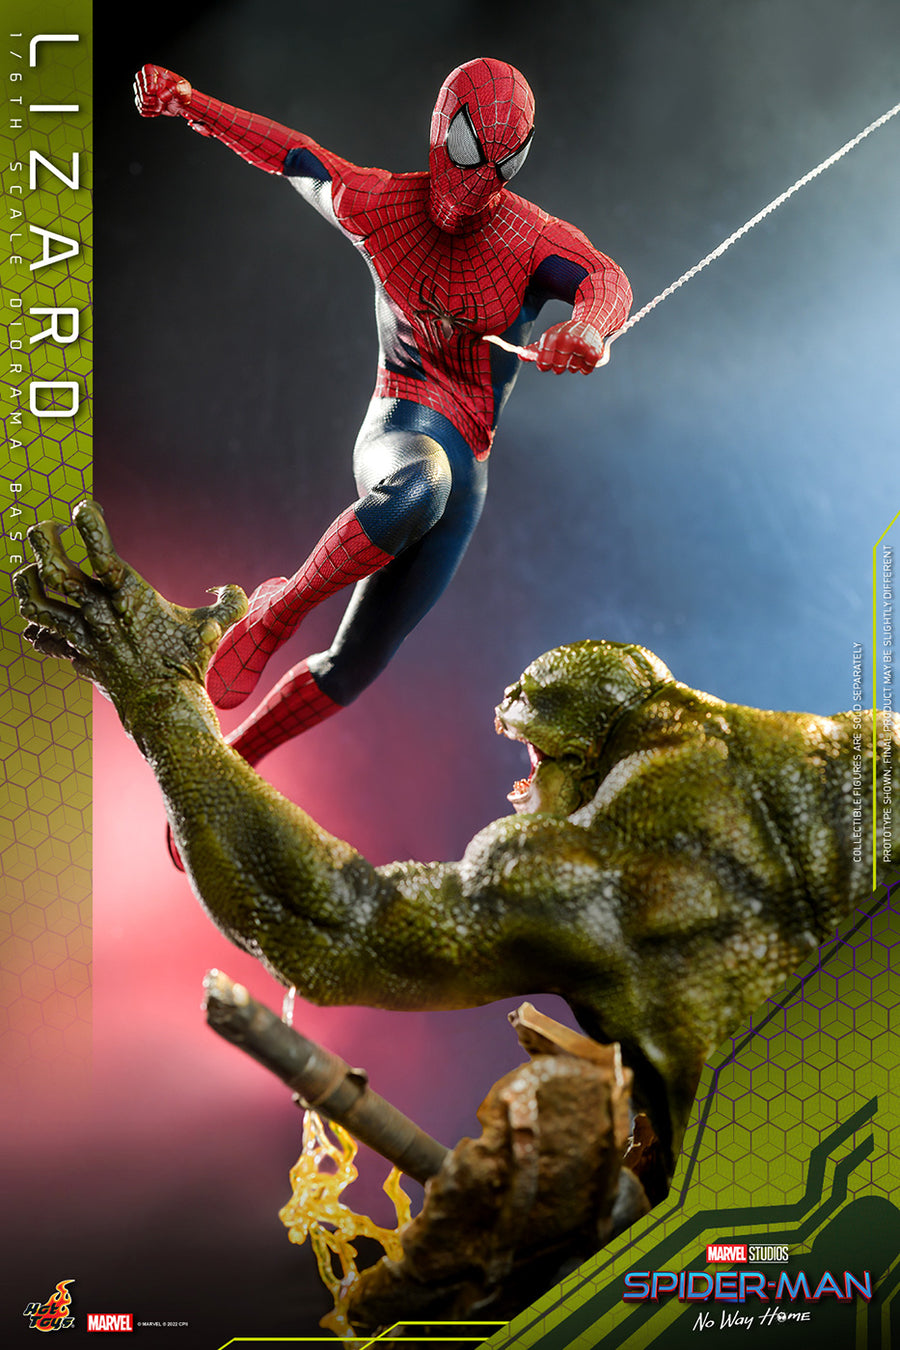 Lizard, Spider-Man(Peter Parker) - The Amazing Spider-Man 2